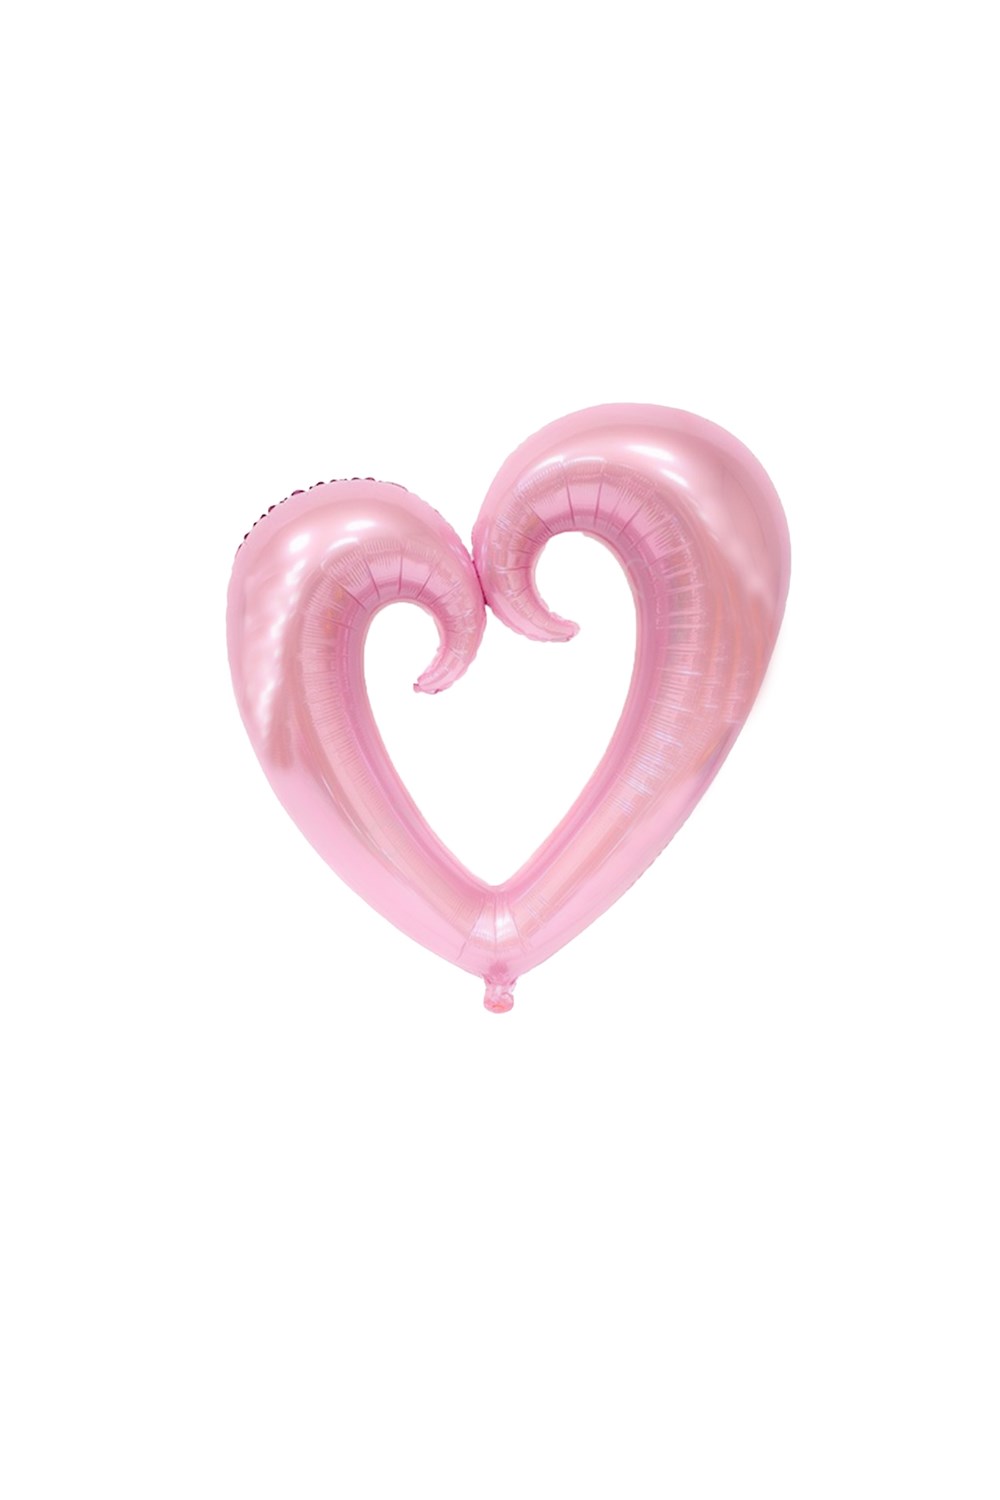 Pembe Parçalı Kalp Orta Folyo Balon 60cmPartistPSPST866